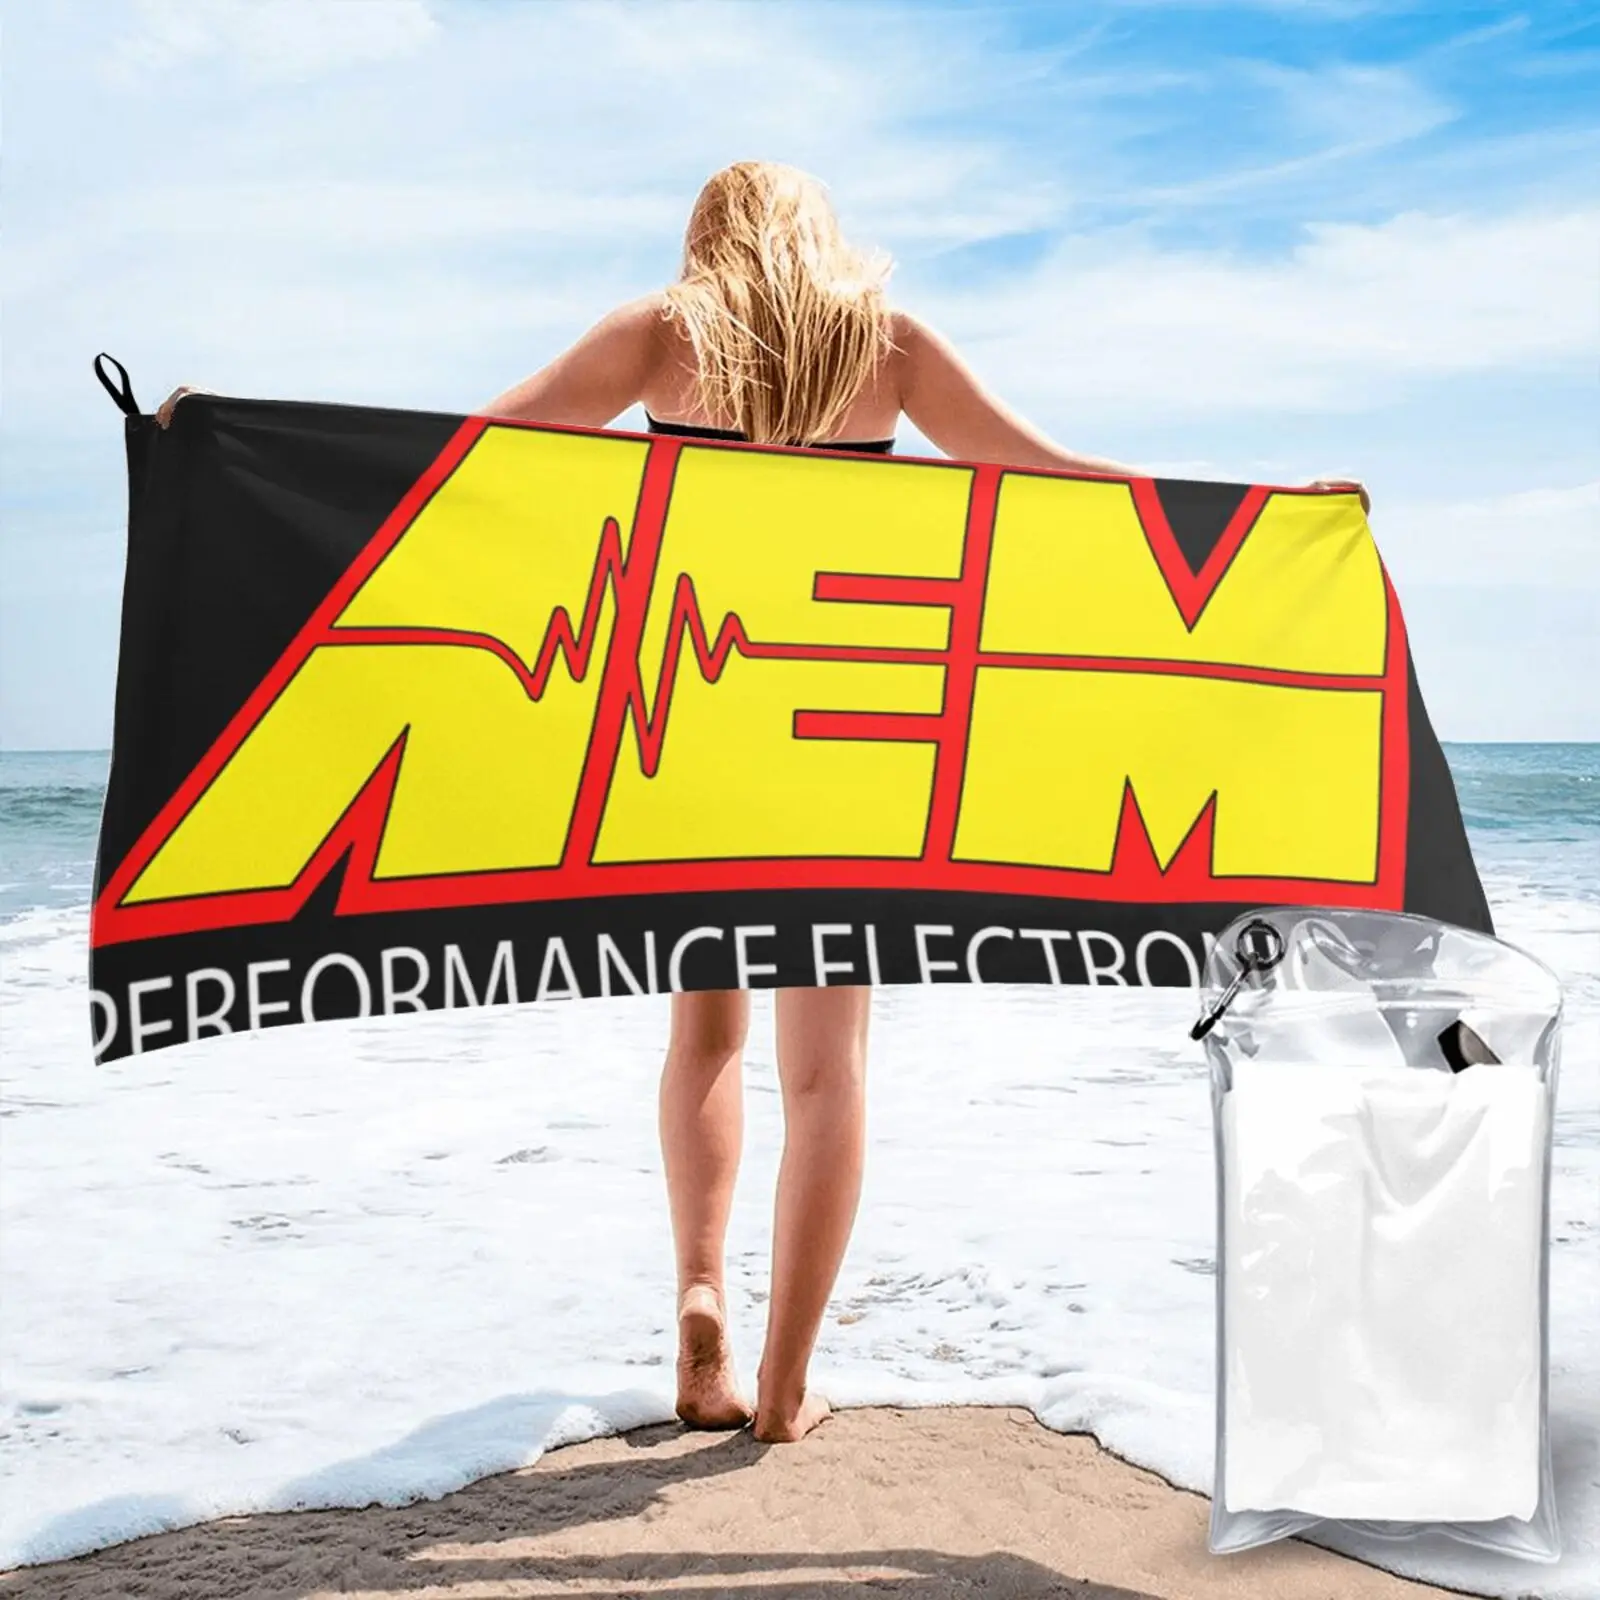 

Aem выполненные системы двигателя 5764 комплекты пляжных полотенец для ванной махровые полотенца пляжная одежда для ванны морское пляжное пол...